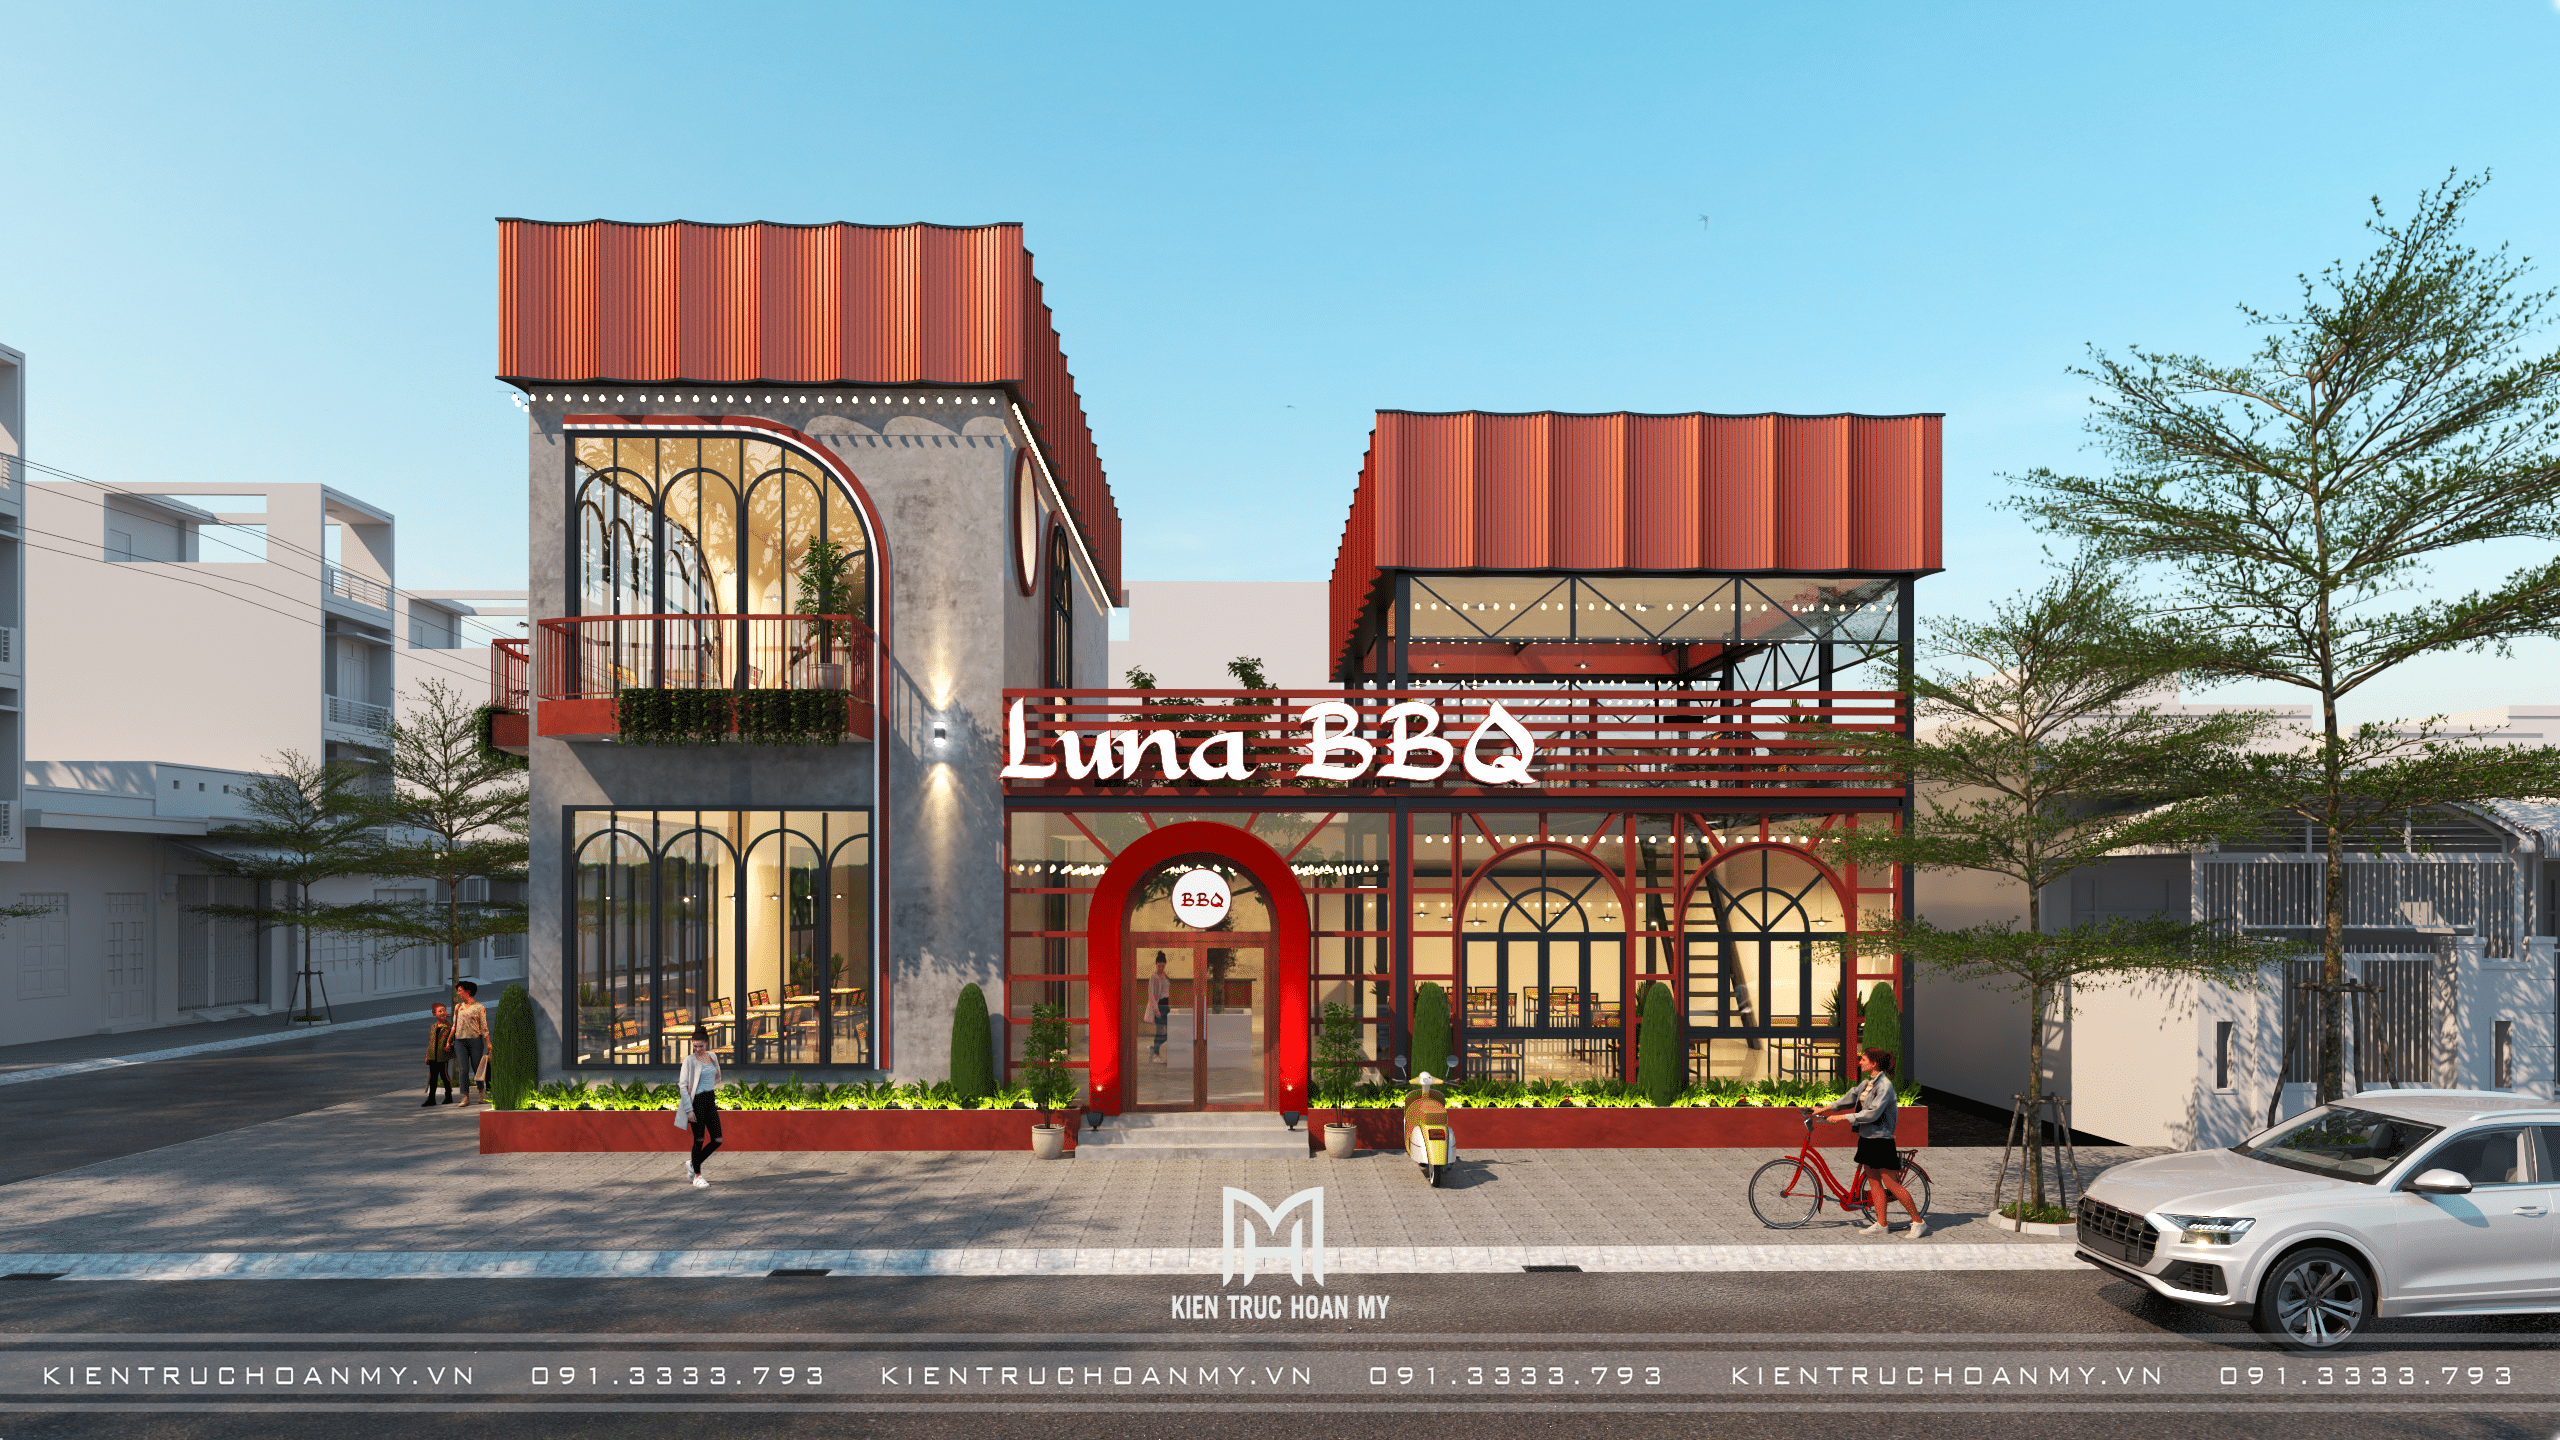 Nhà hàng Luna BBQ với vẻ ngoài hiện đại, thời thượng